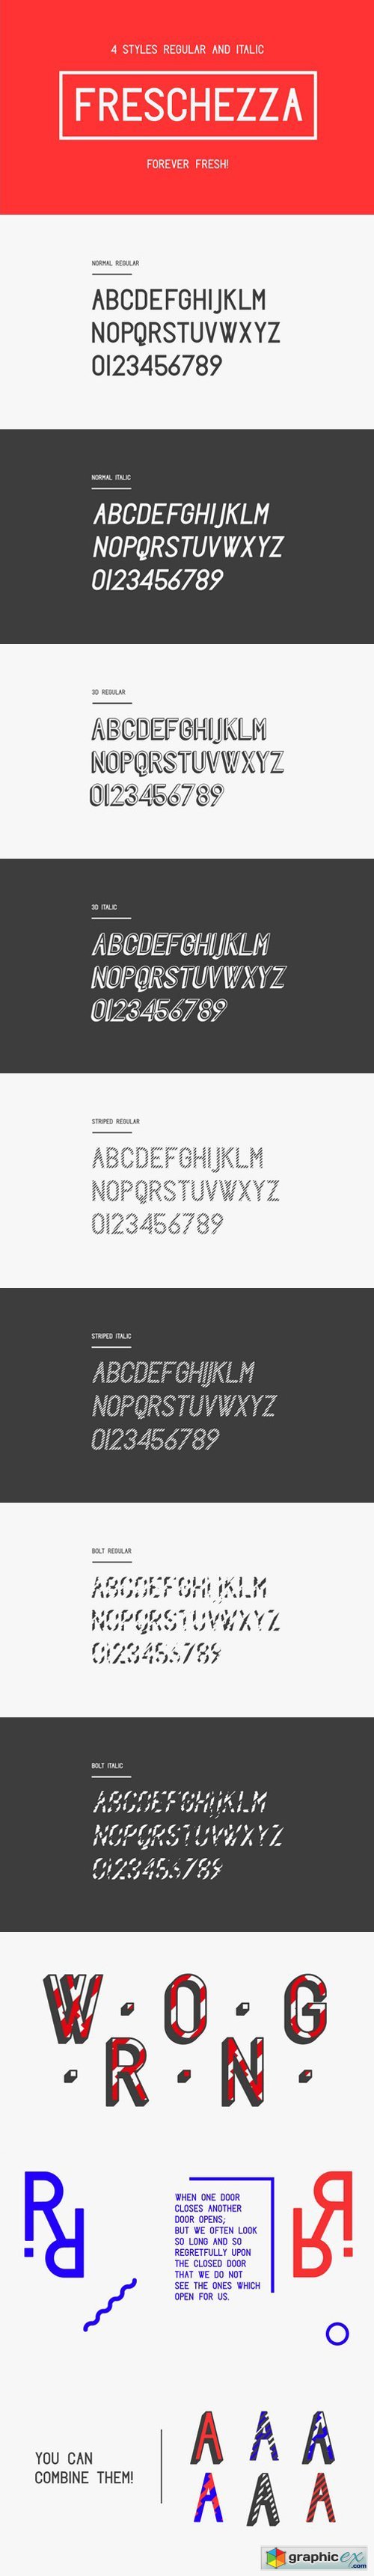 Freschezza Typeface